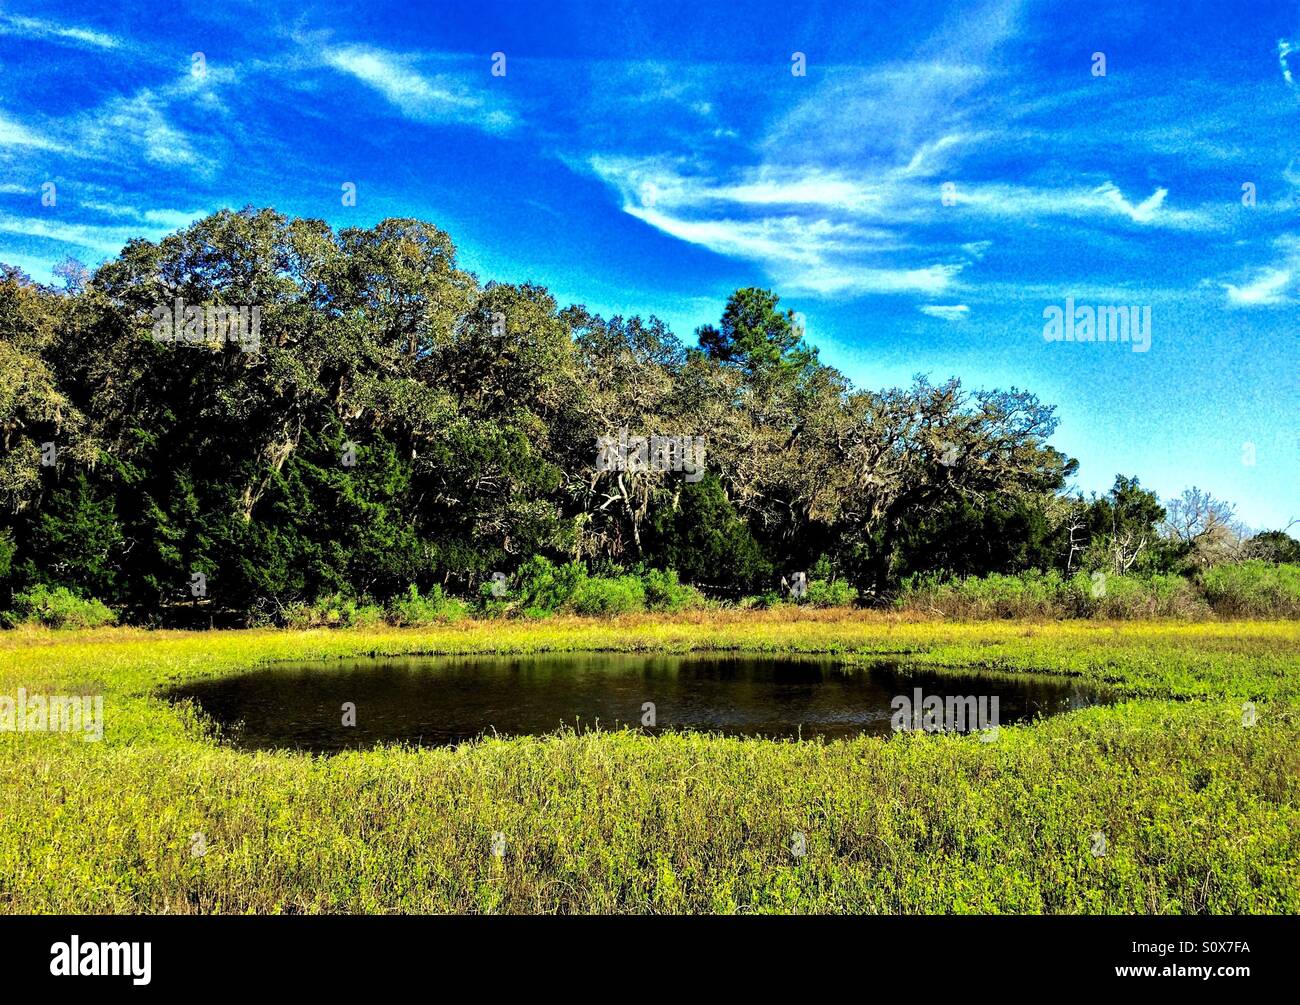 Salz-Sumpf-Teich mit prominenten grünen Rasen im Vordergrund und dramatische blauen Himmel oben, Guana River State Park, Florida, März 2016 Stockfoto